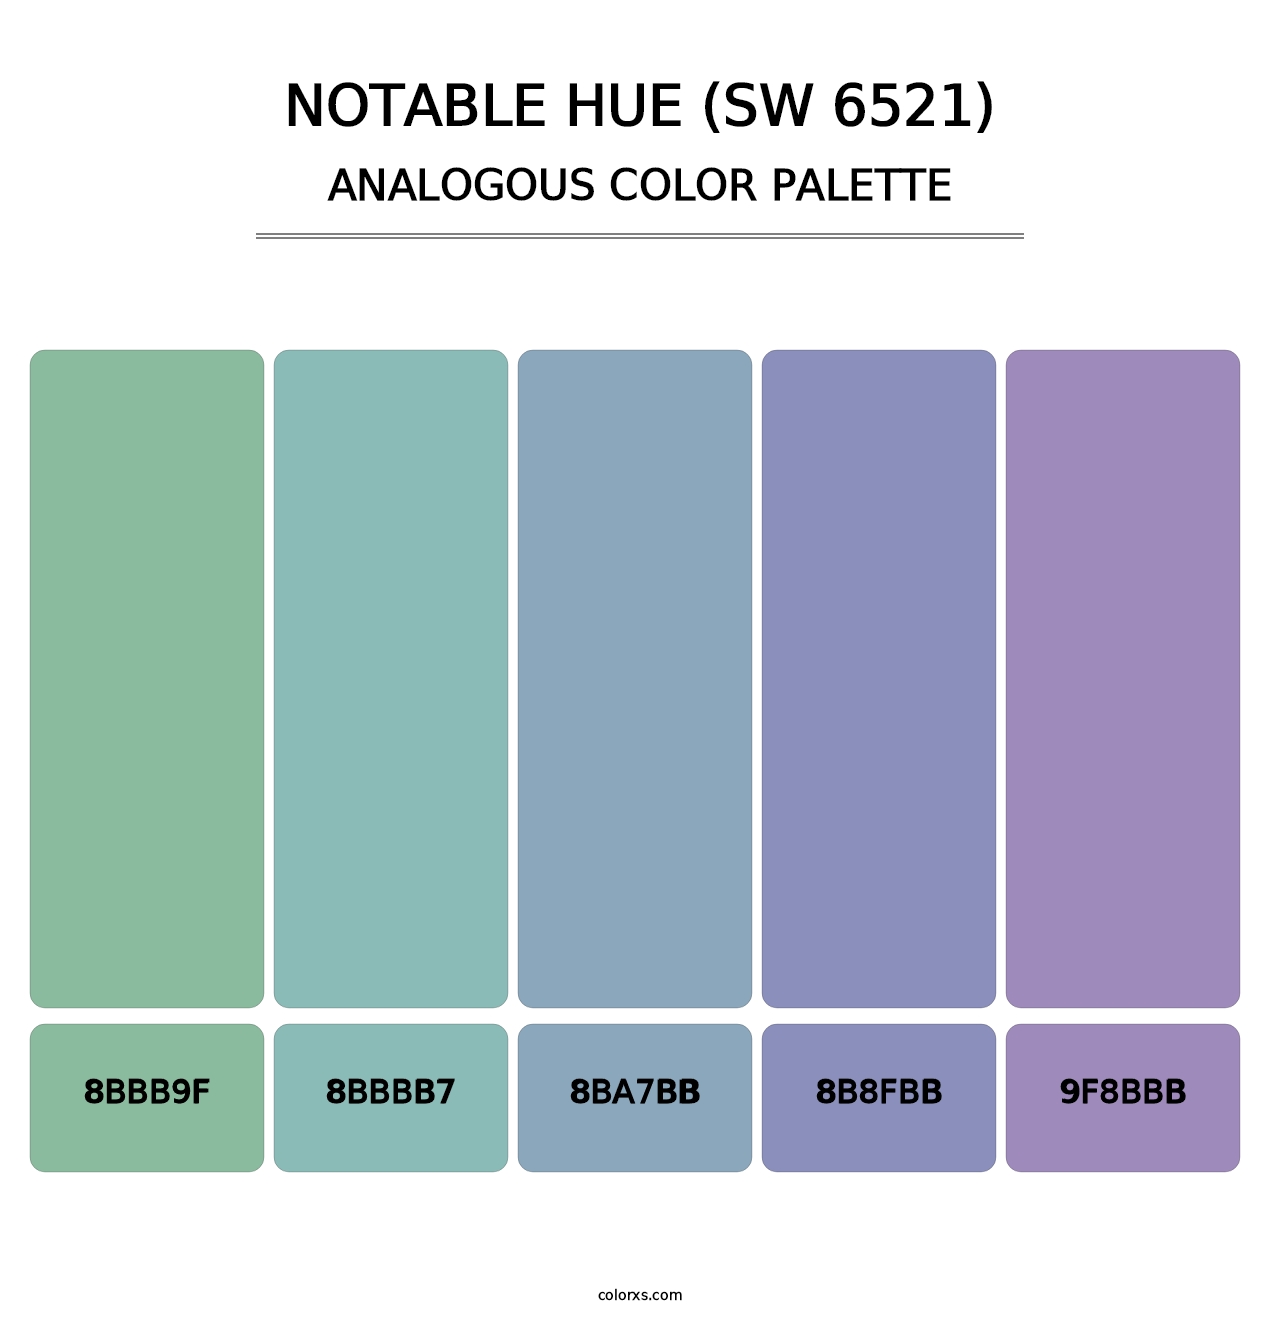 Notable Hue (SW 6521) - Analogous Color Palette